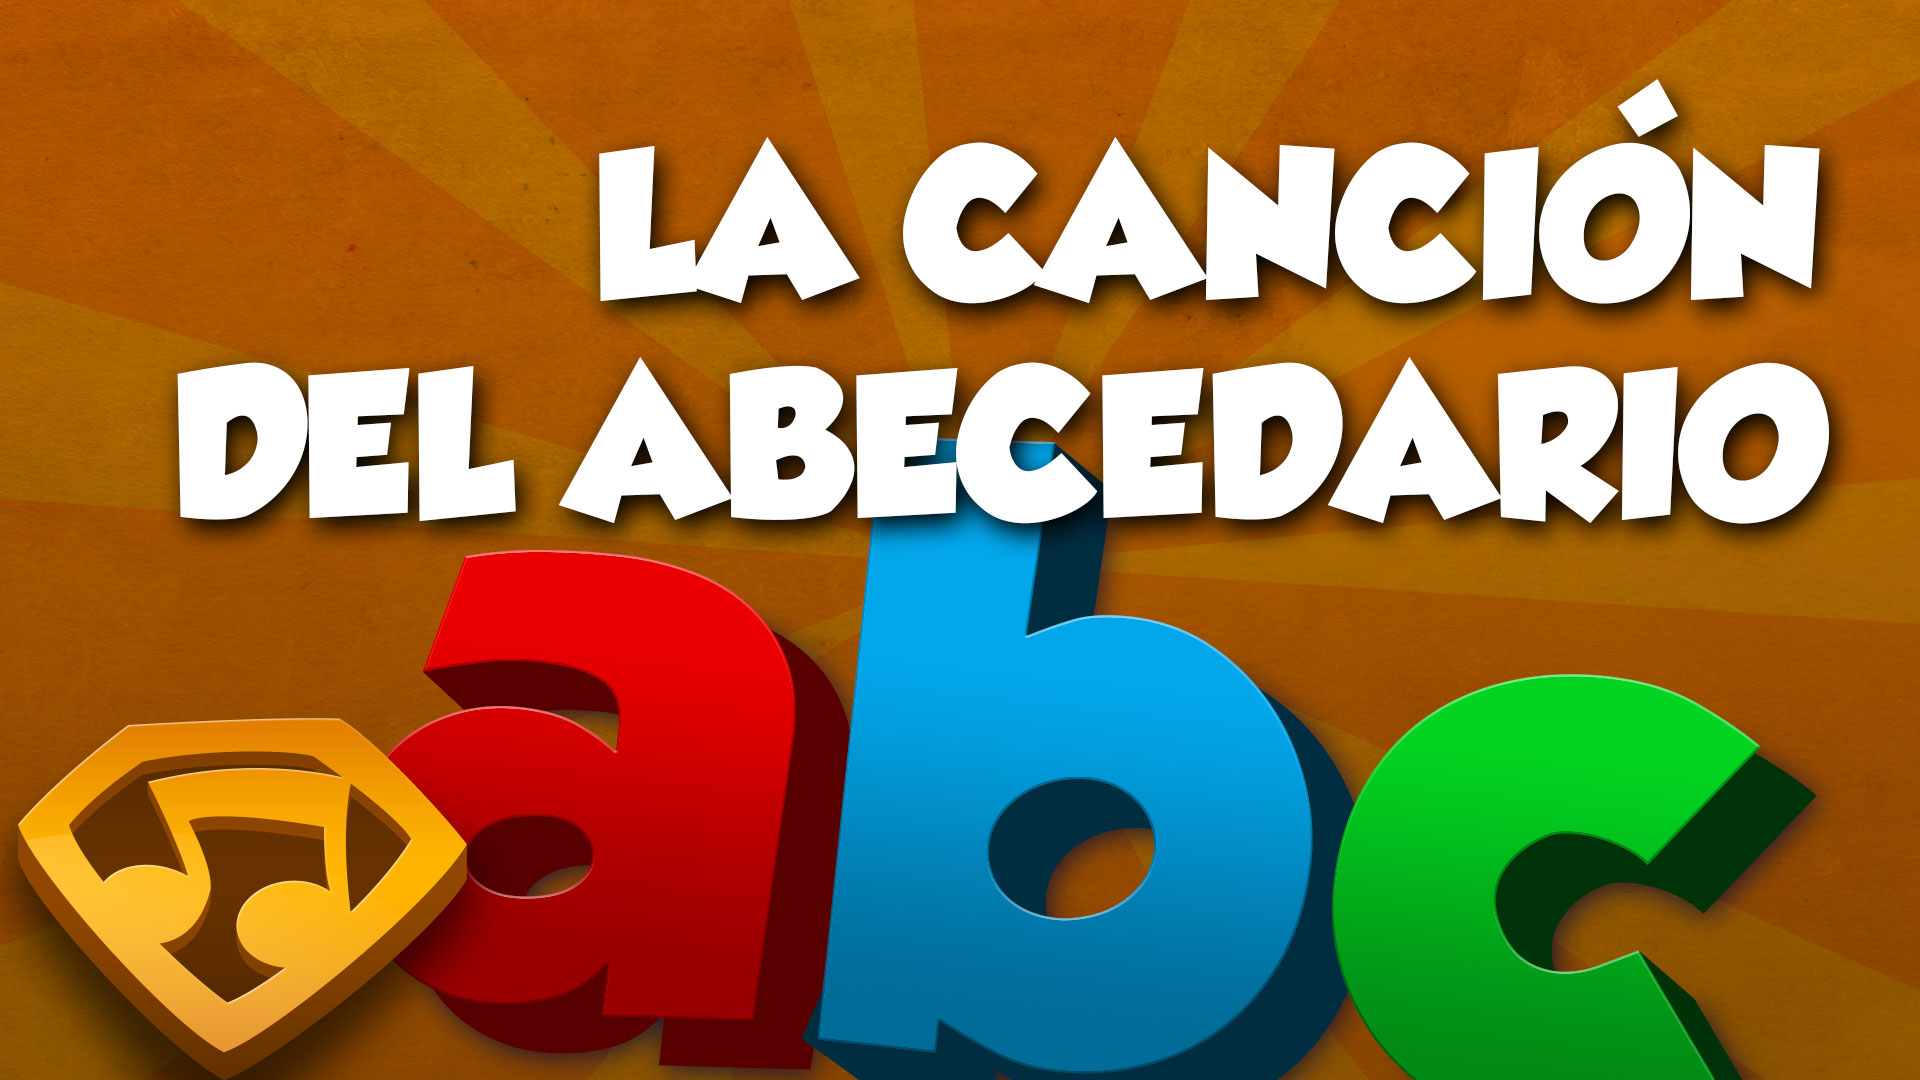 La Canción Del Abecedario (Letras Minúsculas) video thumbnail. Click to watch the video.